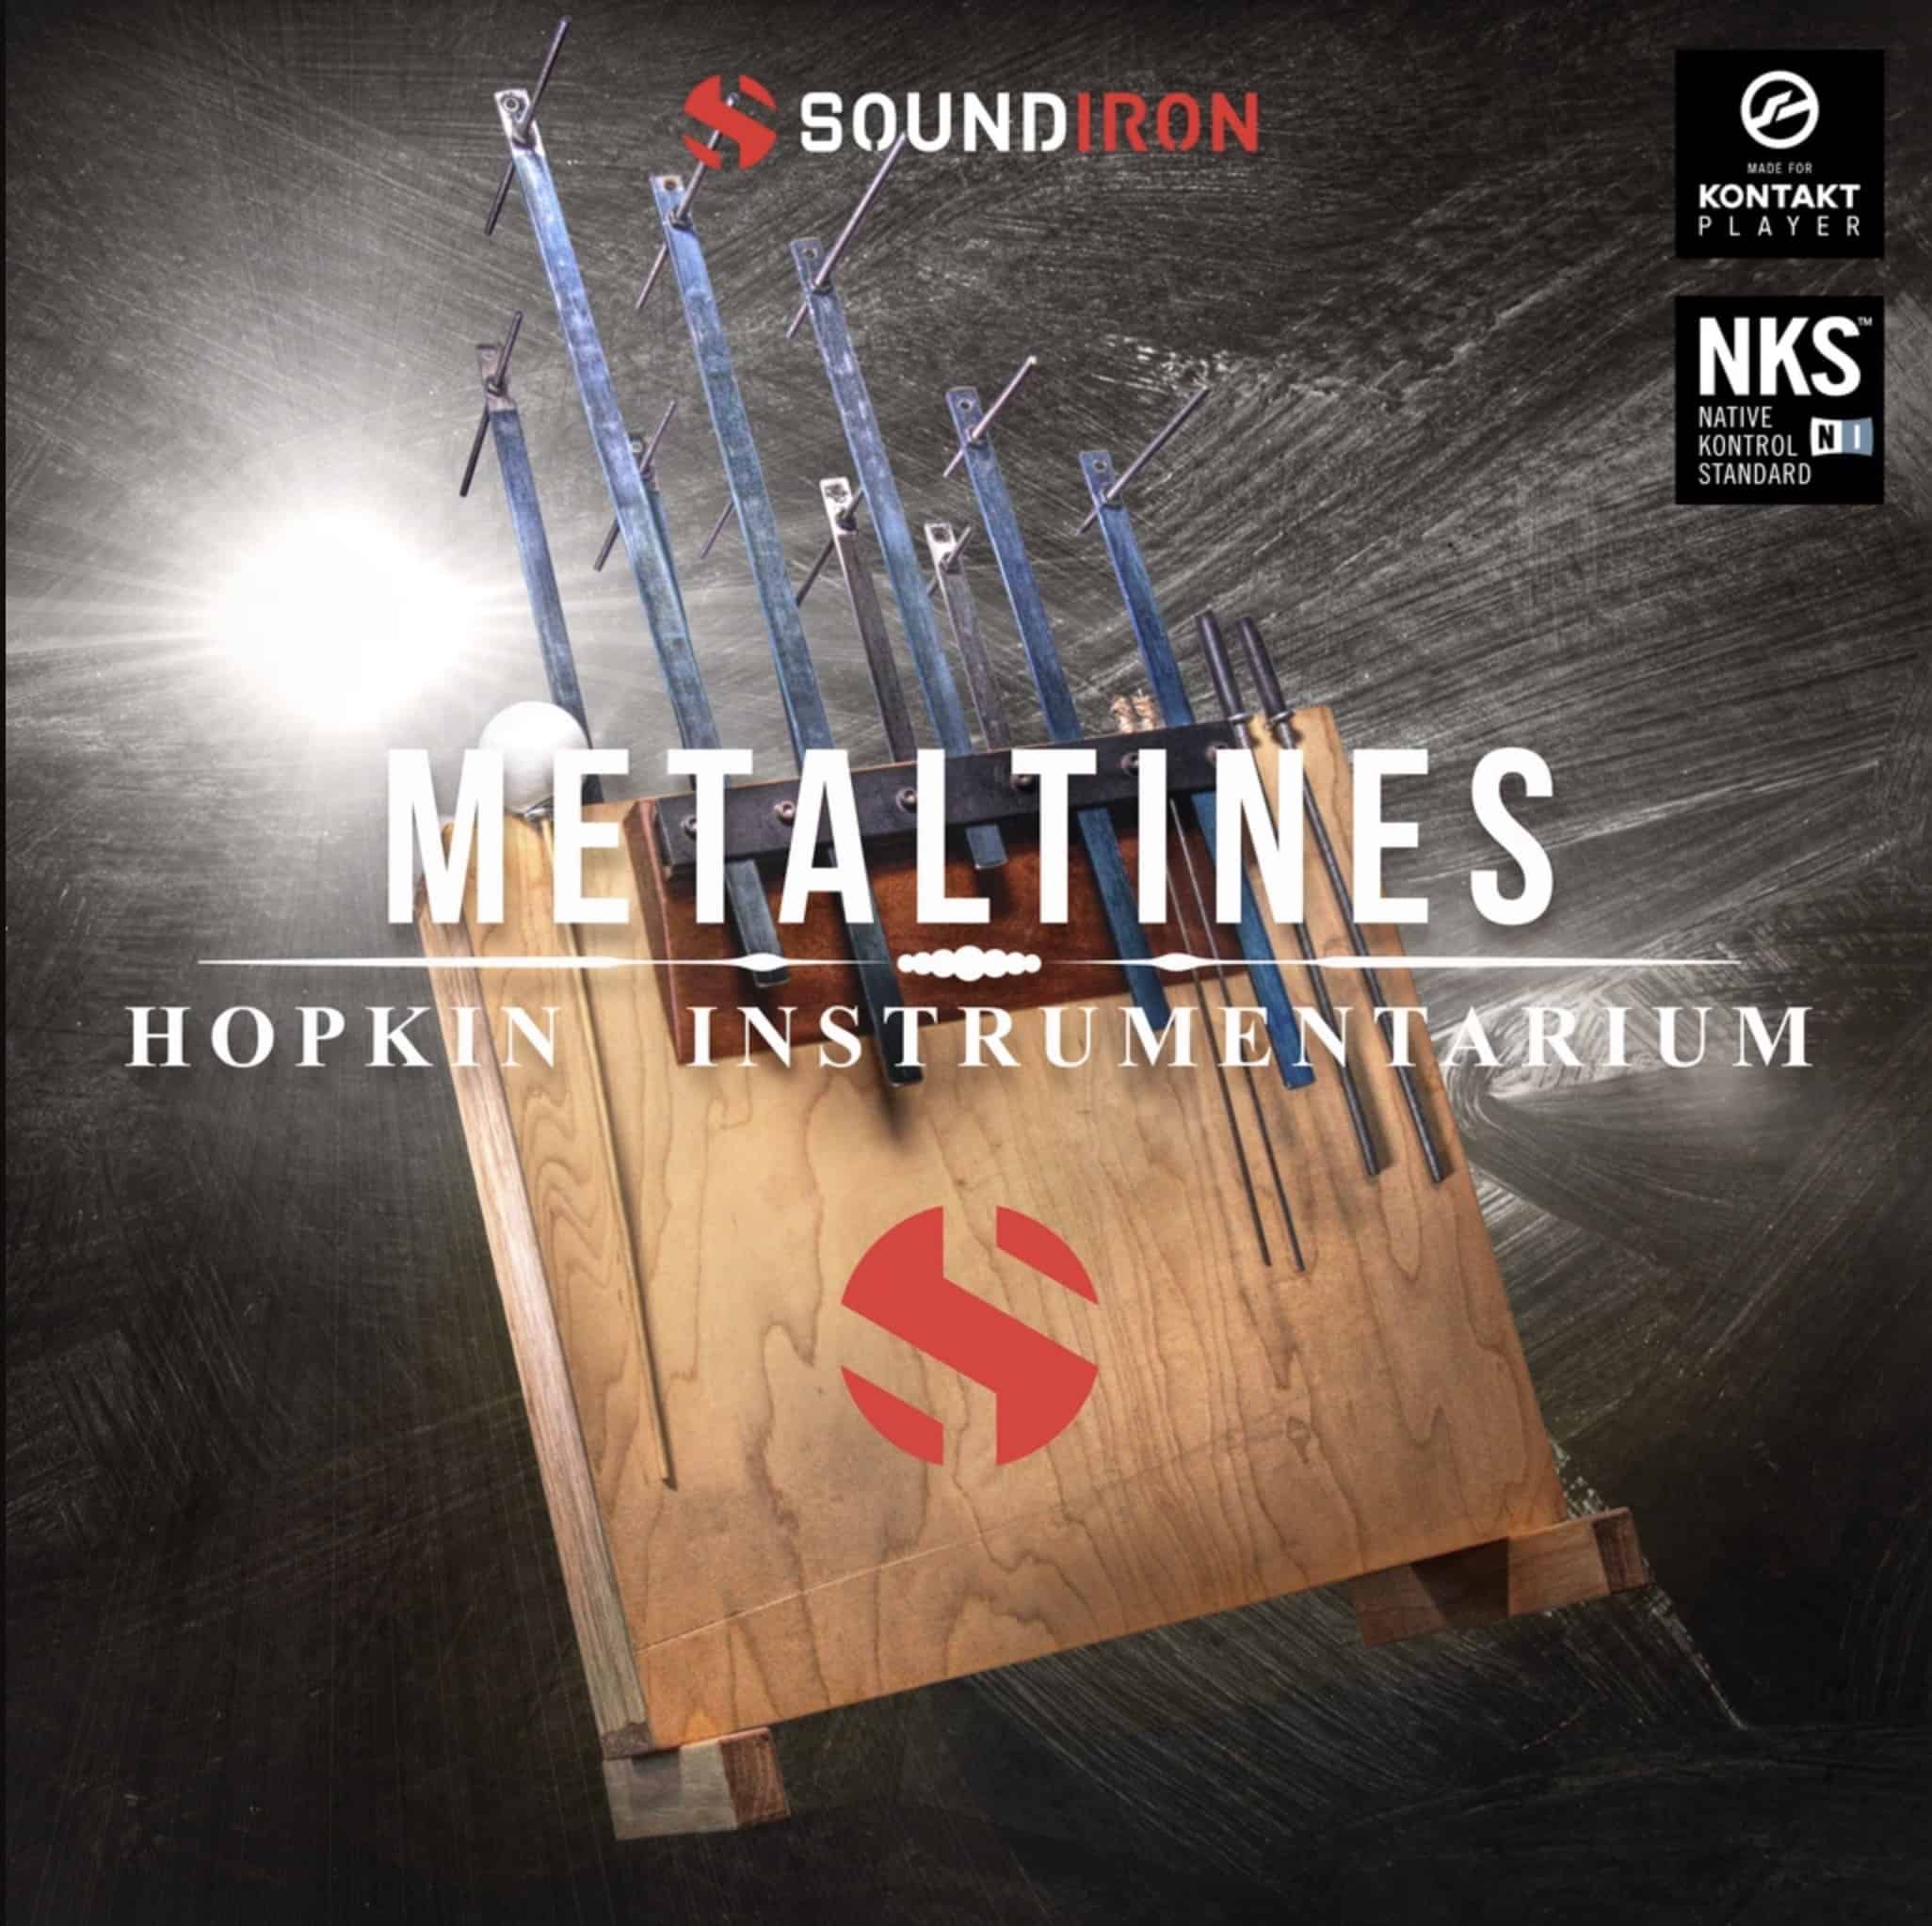 Hopkin Instrumentarium: Metaltines by SoundIron